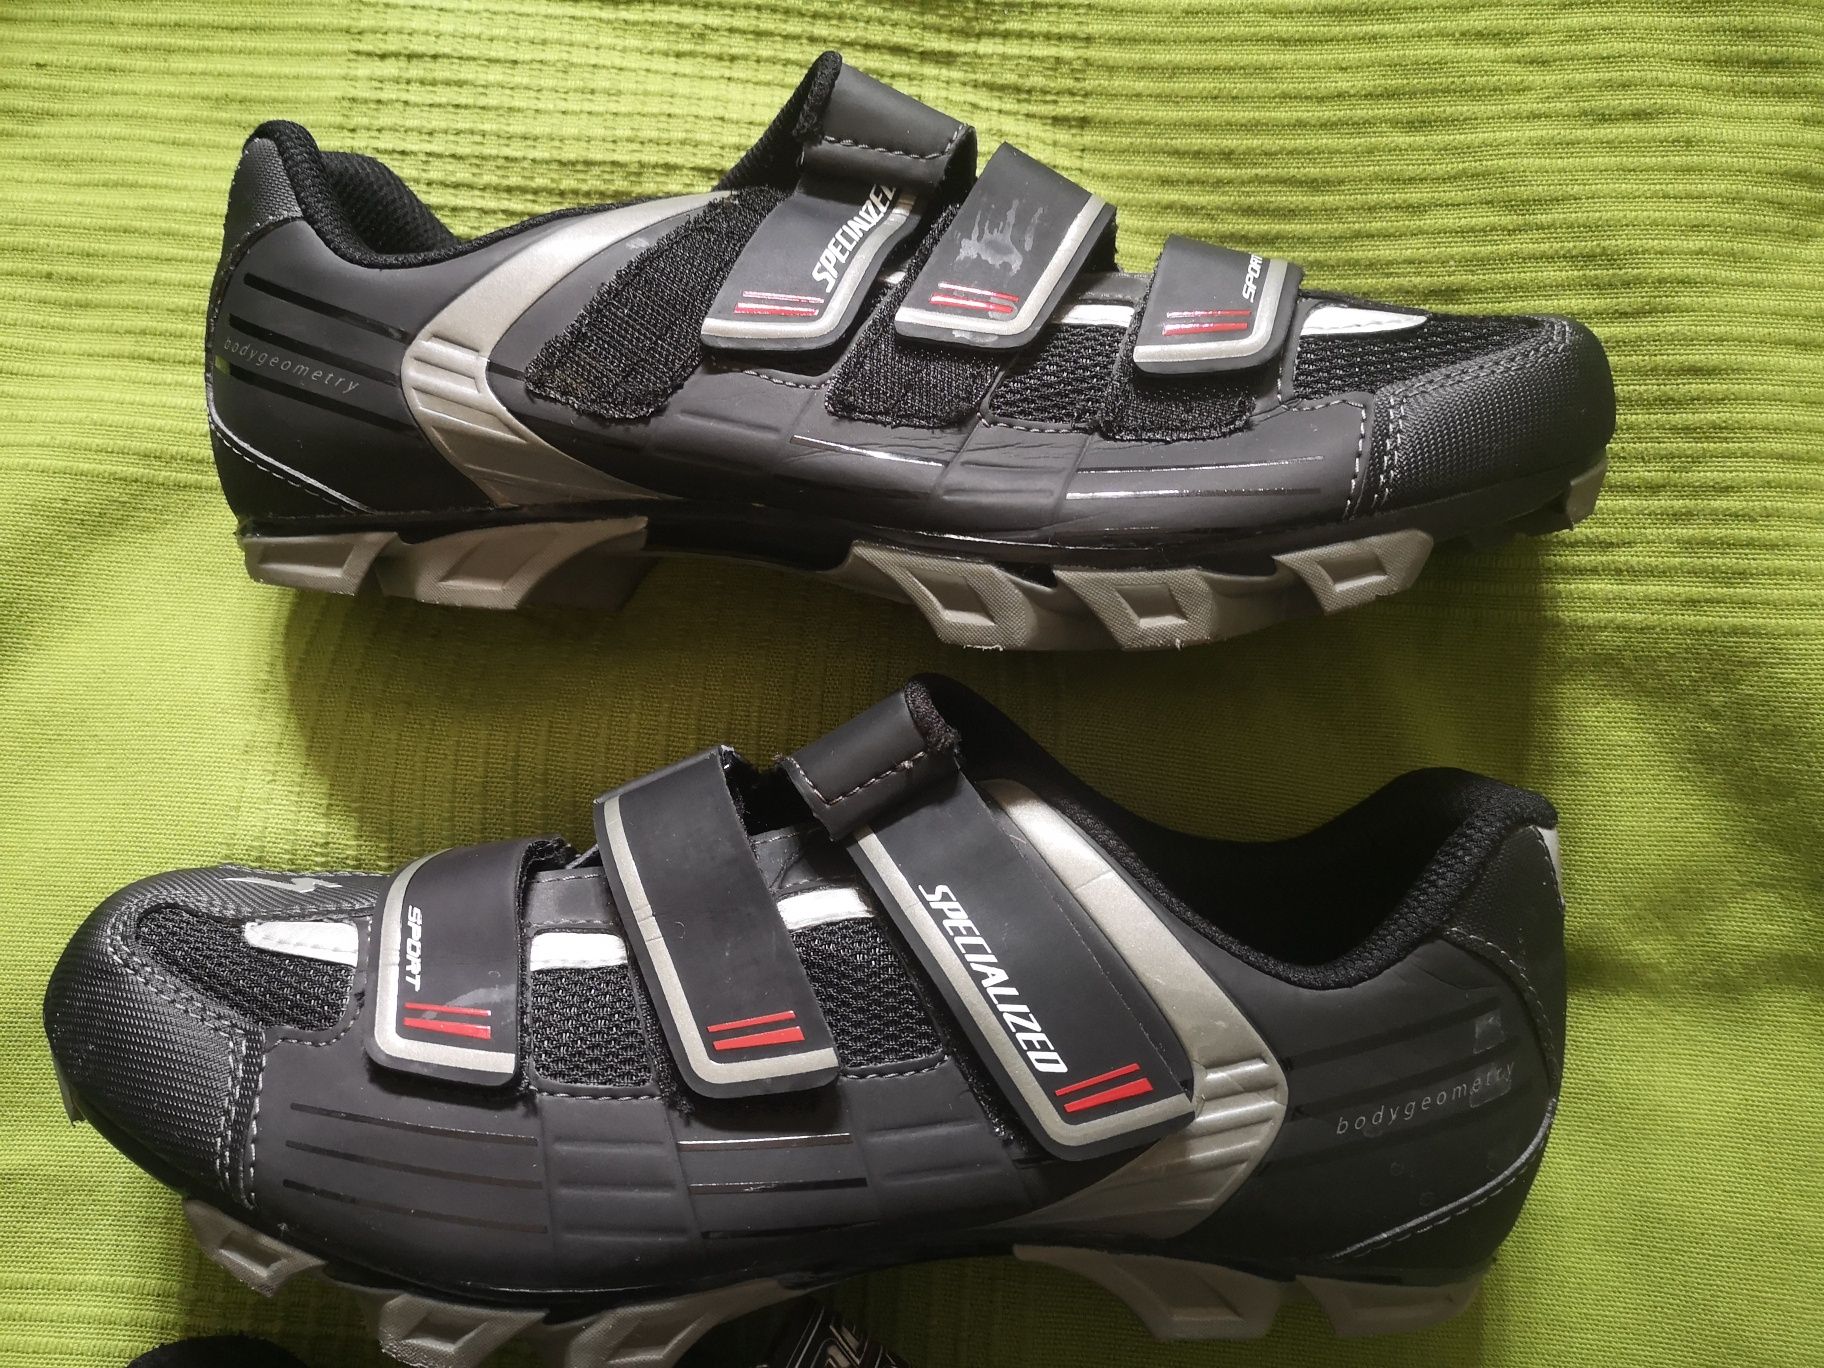 Pantofi ciclism Specialized+Gaerne +placute SPD incluse marime 43